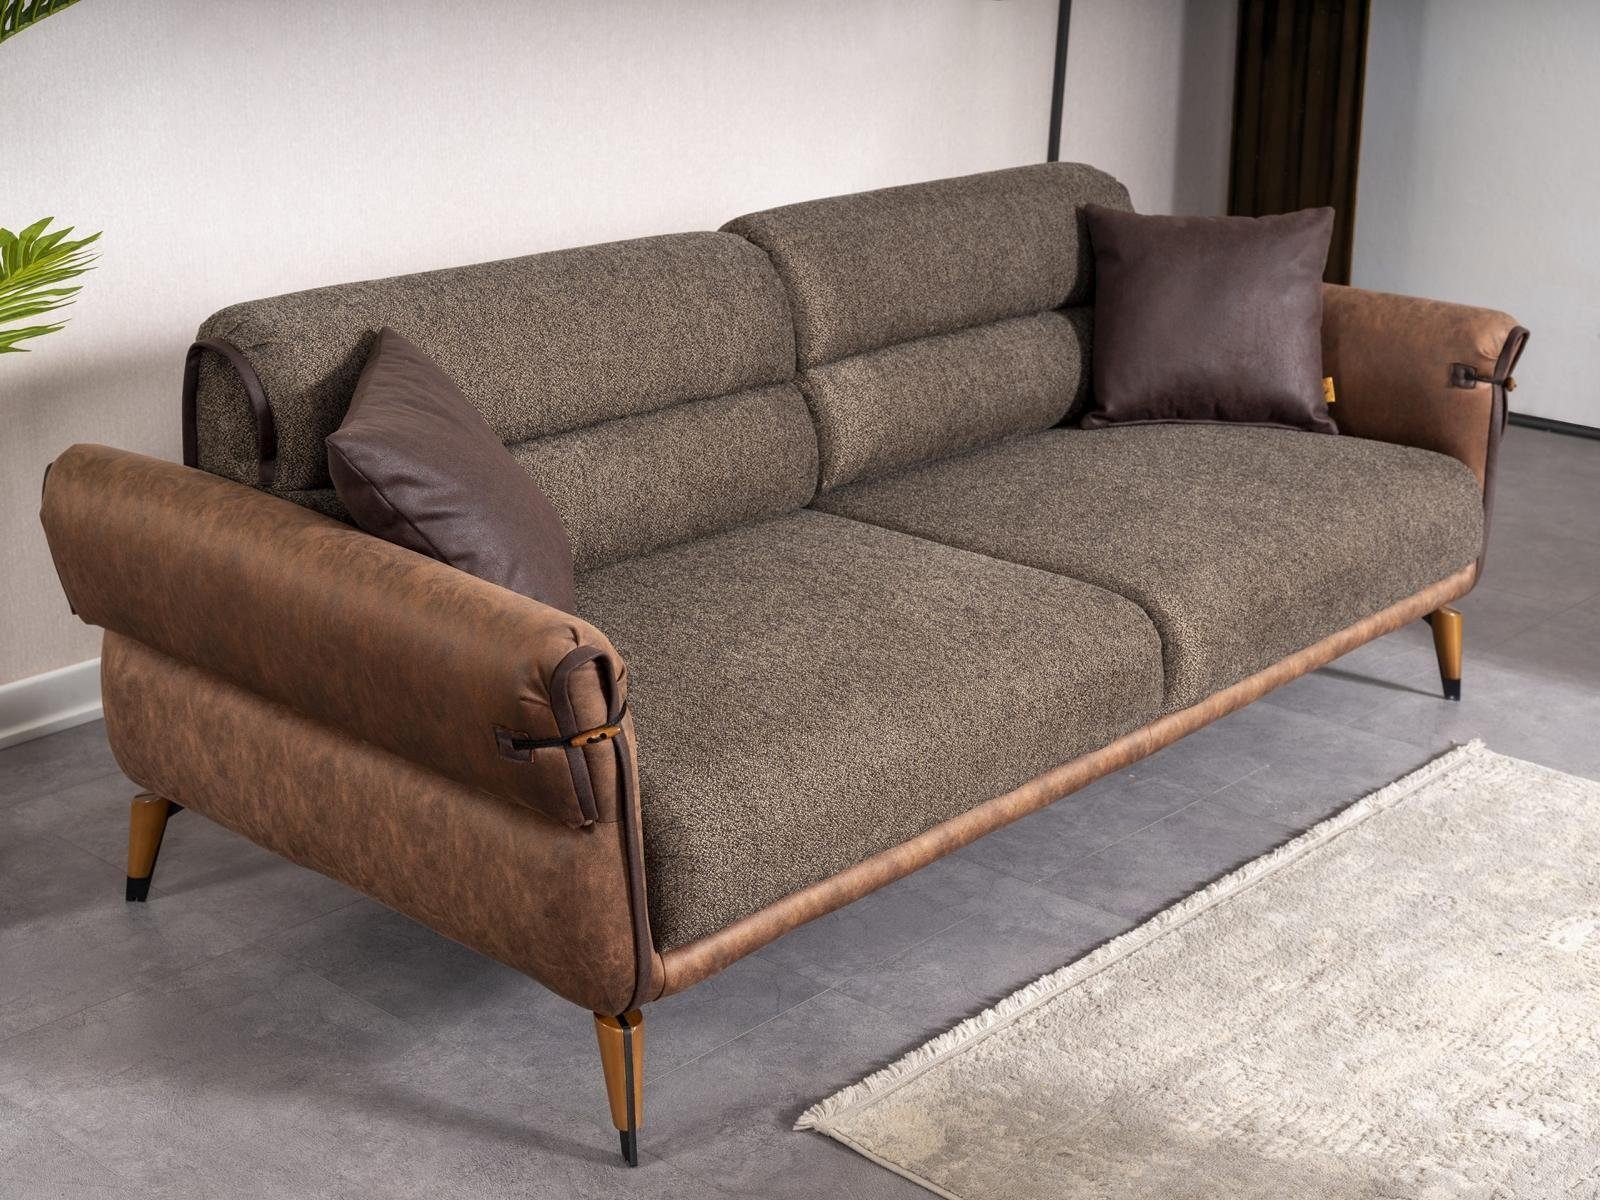 JVmoebel Sofa Polstermöbel Braun Zweisitzer Neu Einrichtung, Teile, 1 in Sofa Couch Europa Made Wohnzimmer